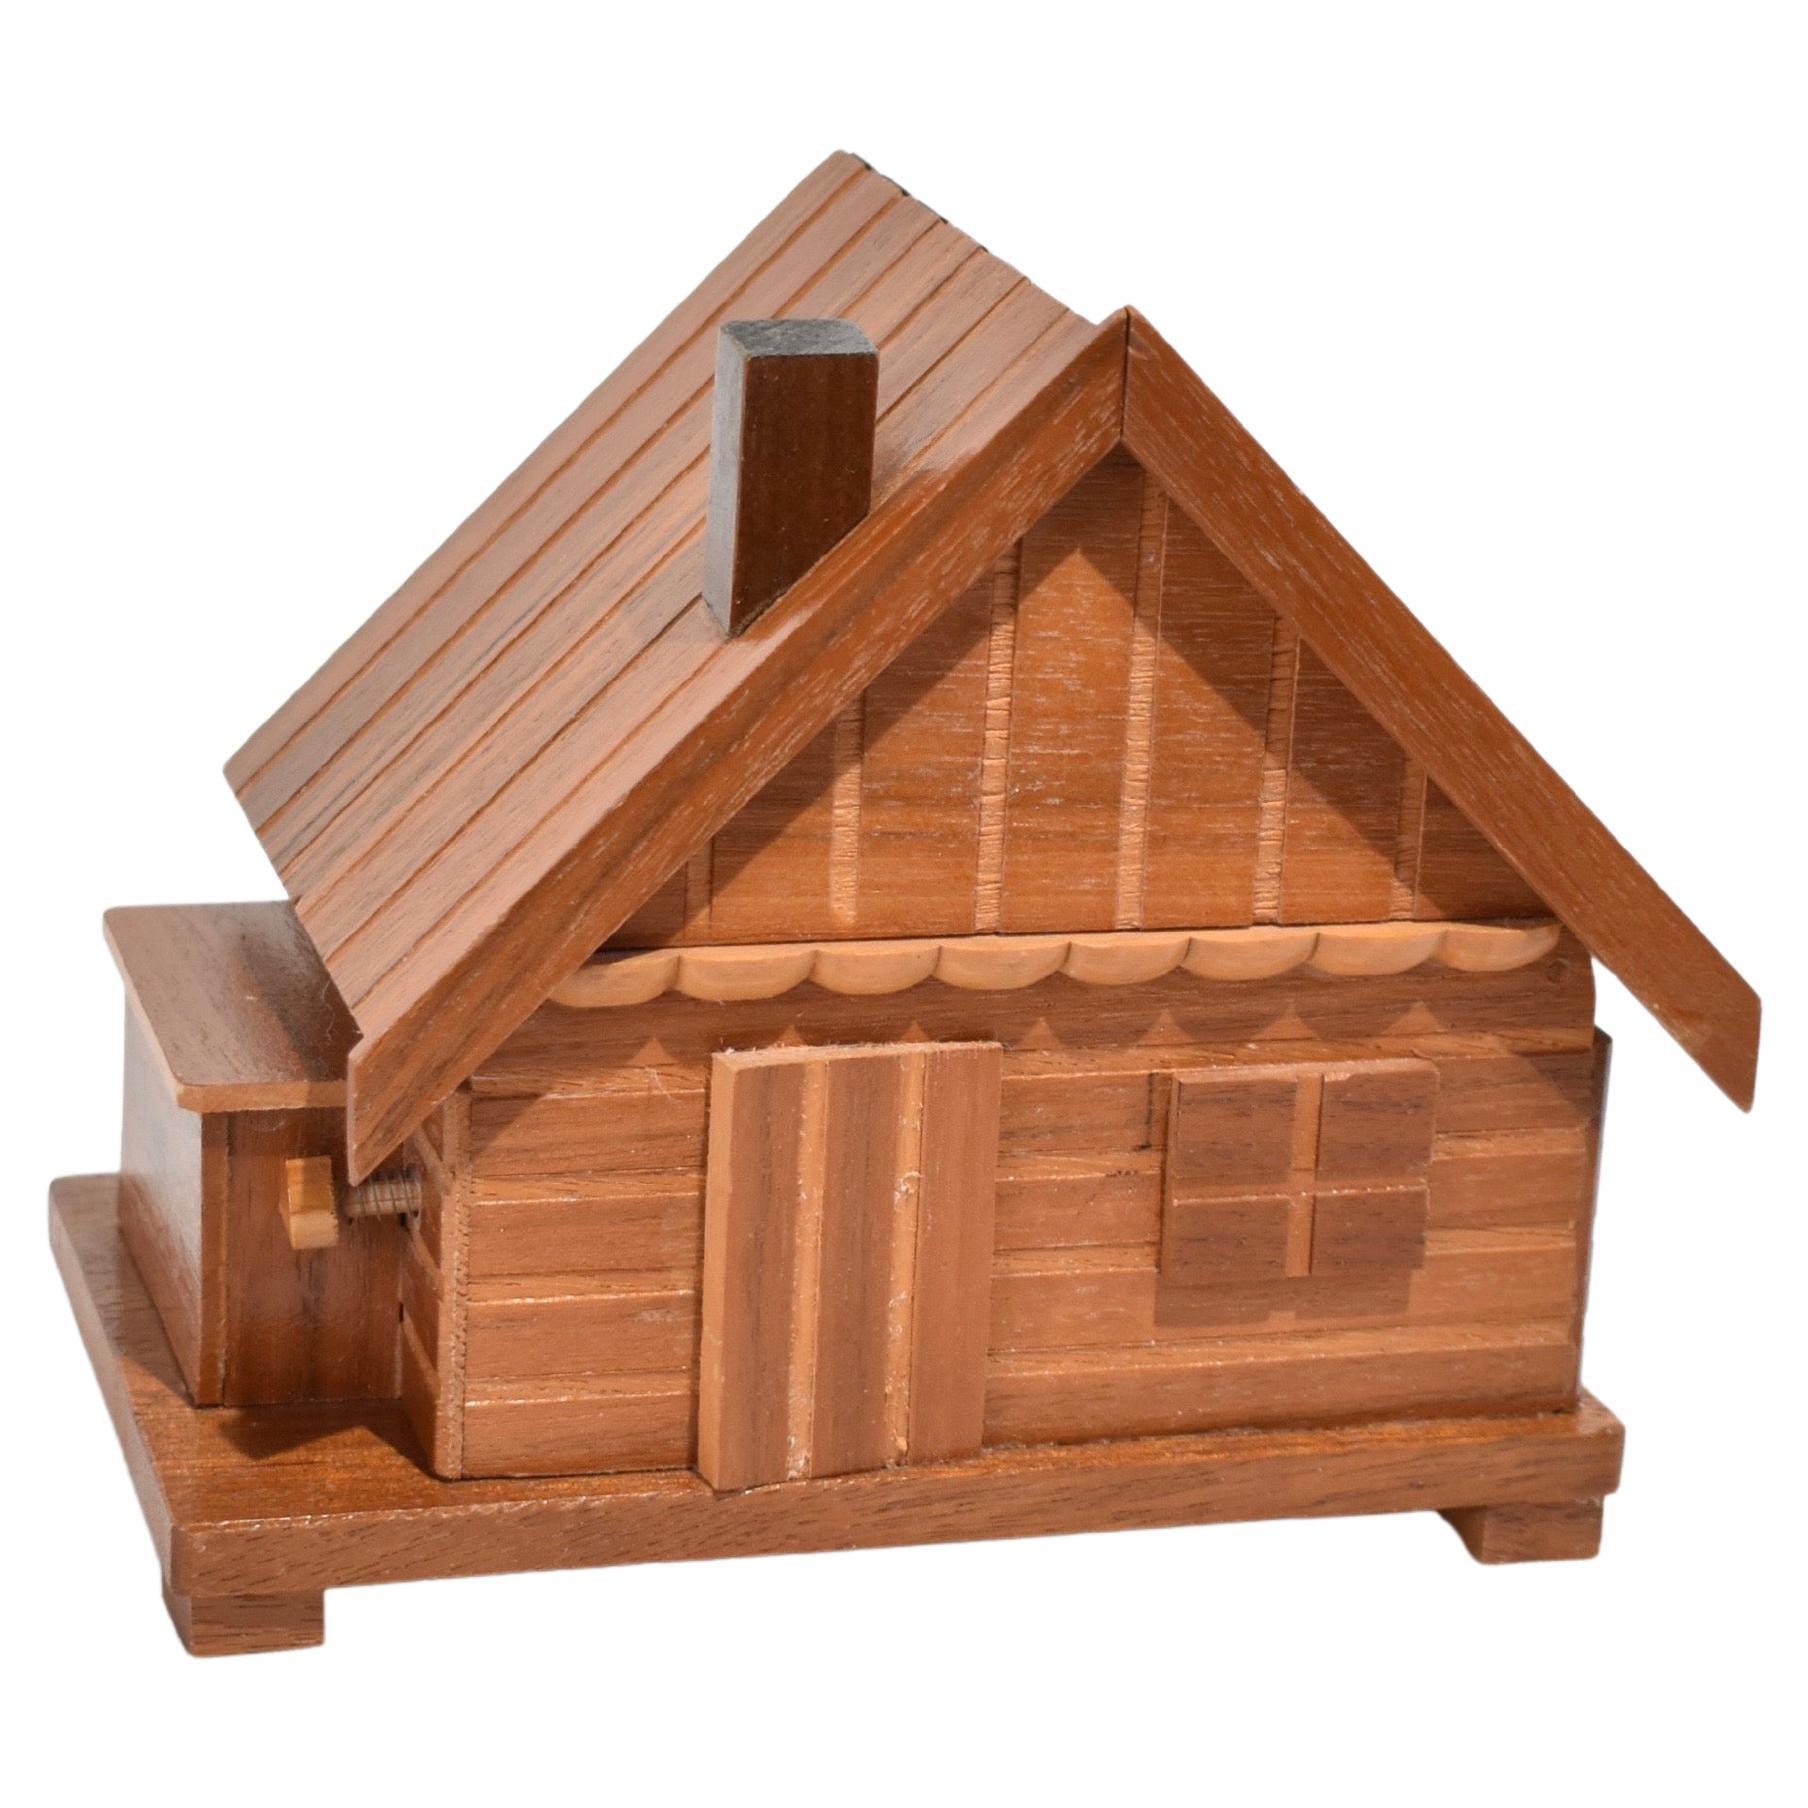 Wooden House Cigarette Holder Music Box